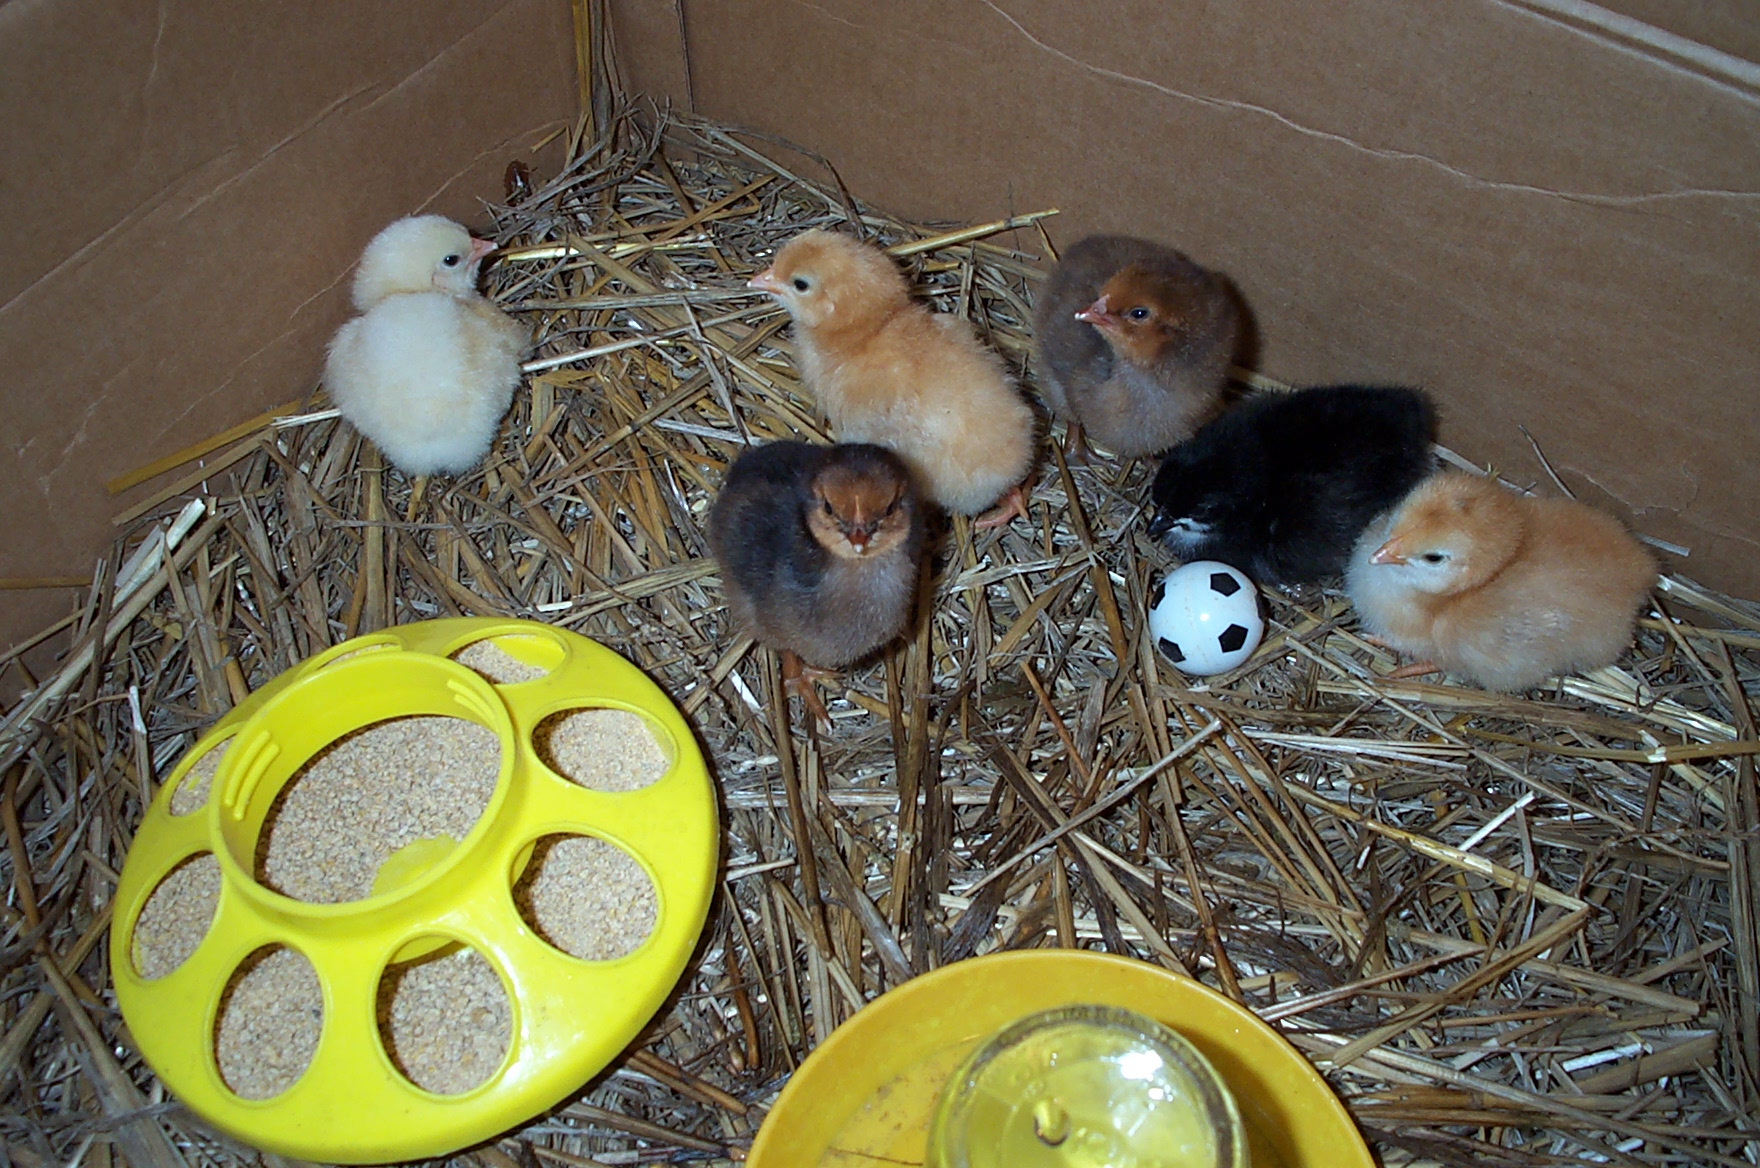 6 chicks hatched June 22-24 2013